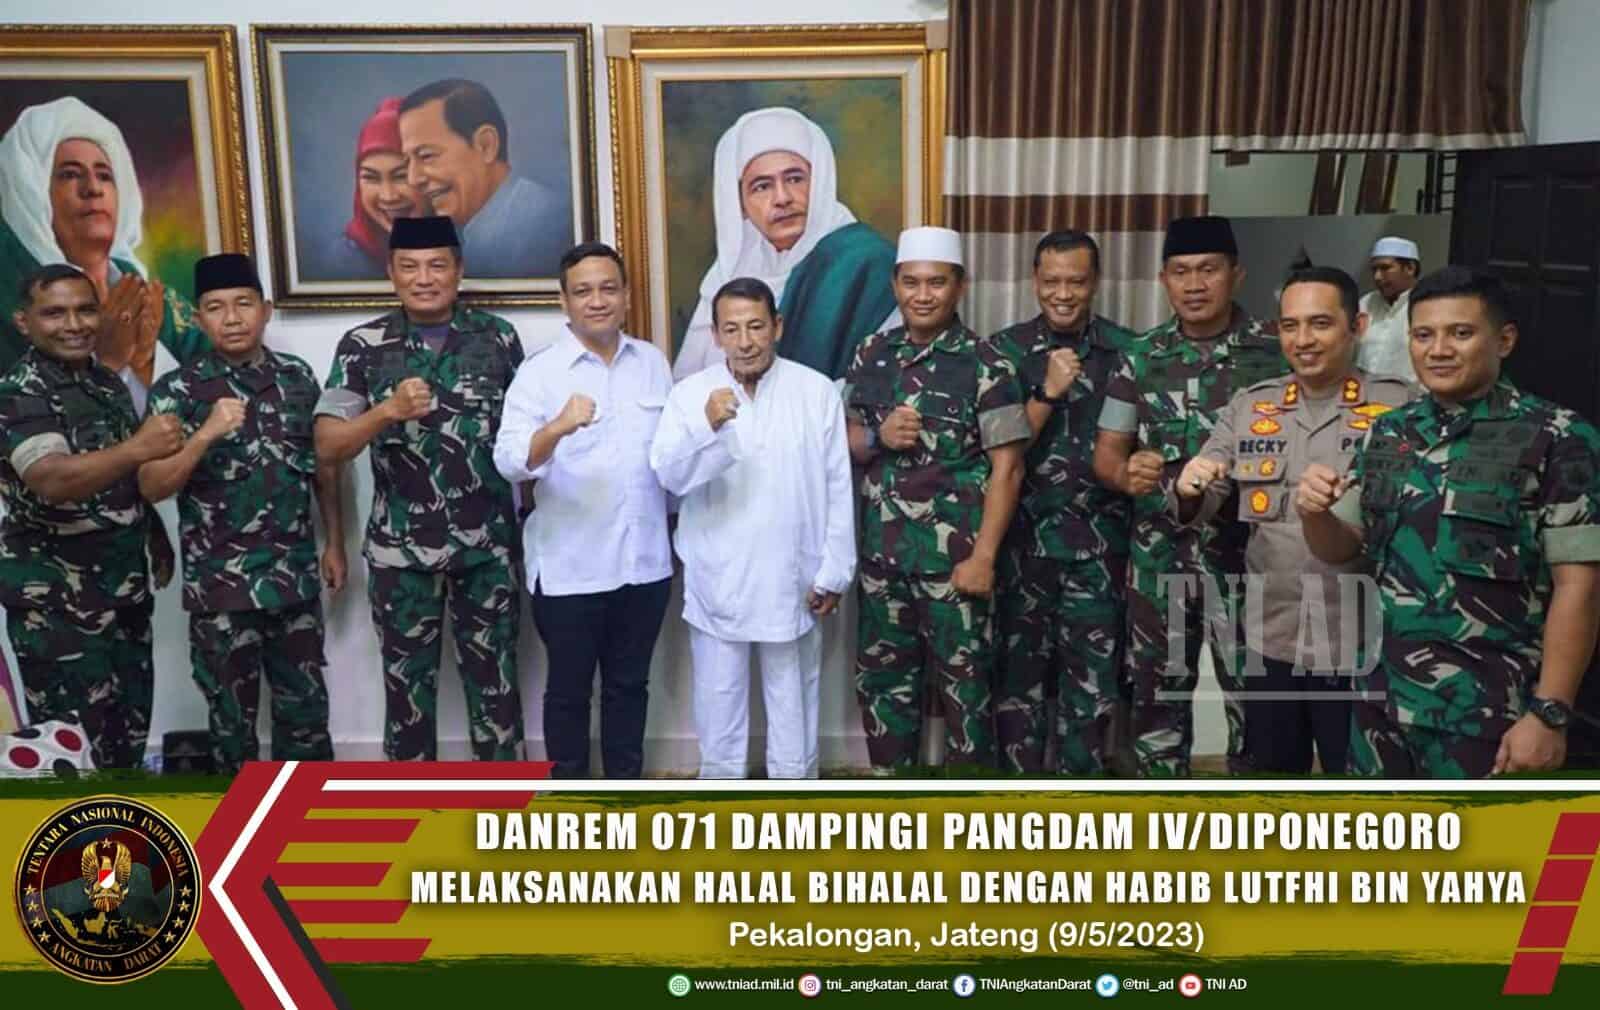 Danrem 071 Dampingi Pangdam IV/Diponegoro Melaksanakan Halal Bihalal Dengan Habib Lutfhi Bin Yahya